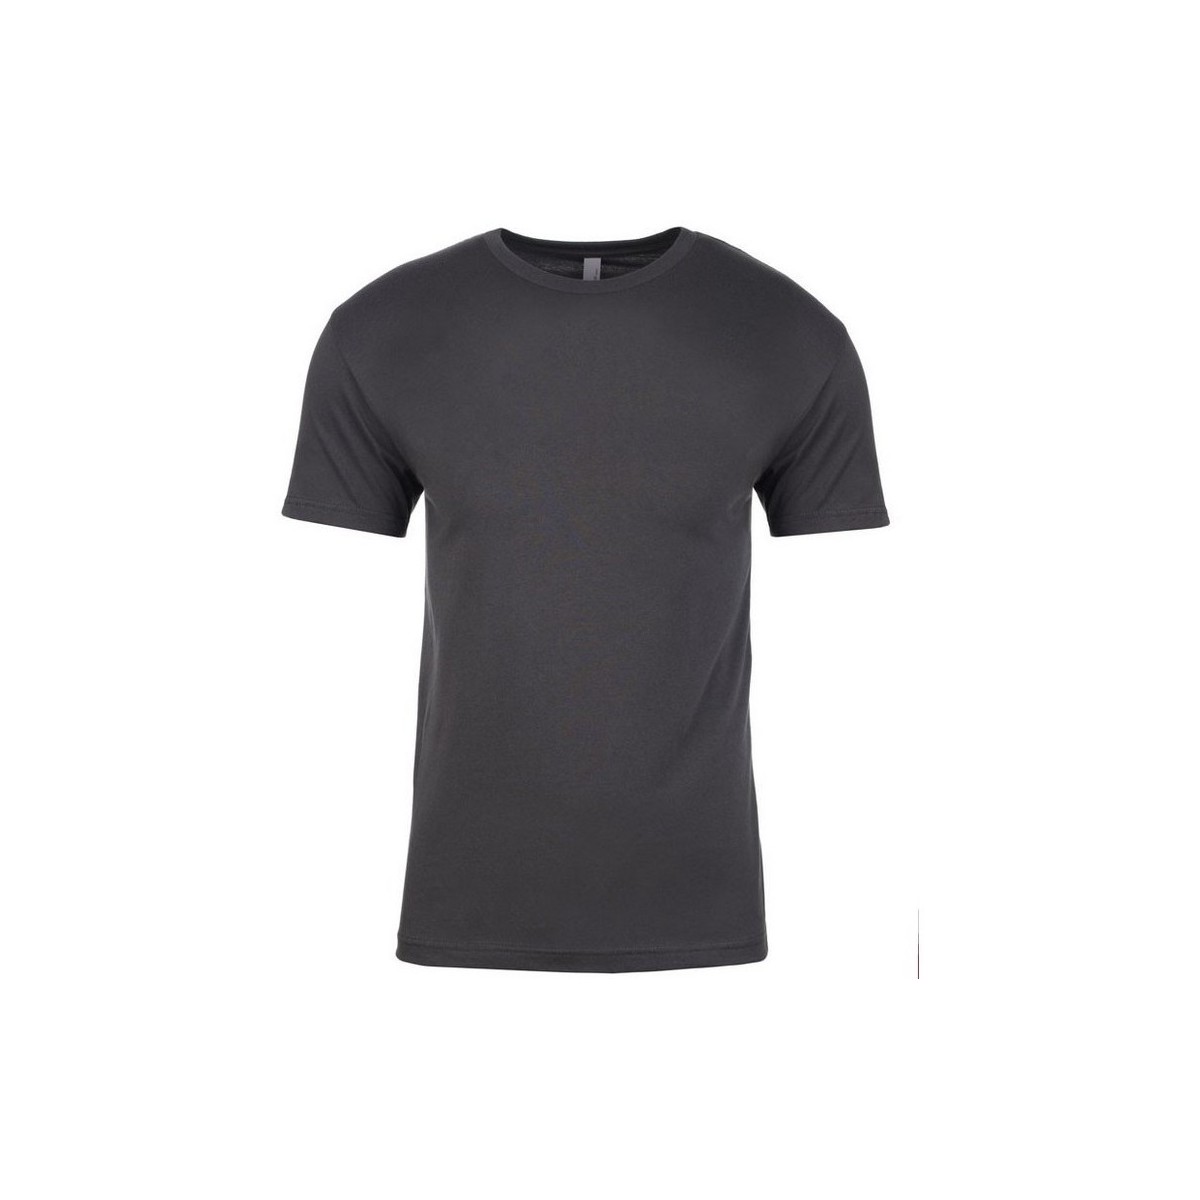 Abbigliamento T-shirts a maniche lunghe Next Level NX3600 Grigio